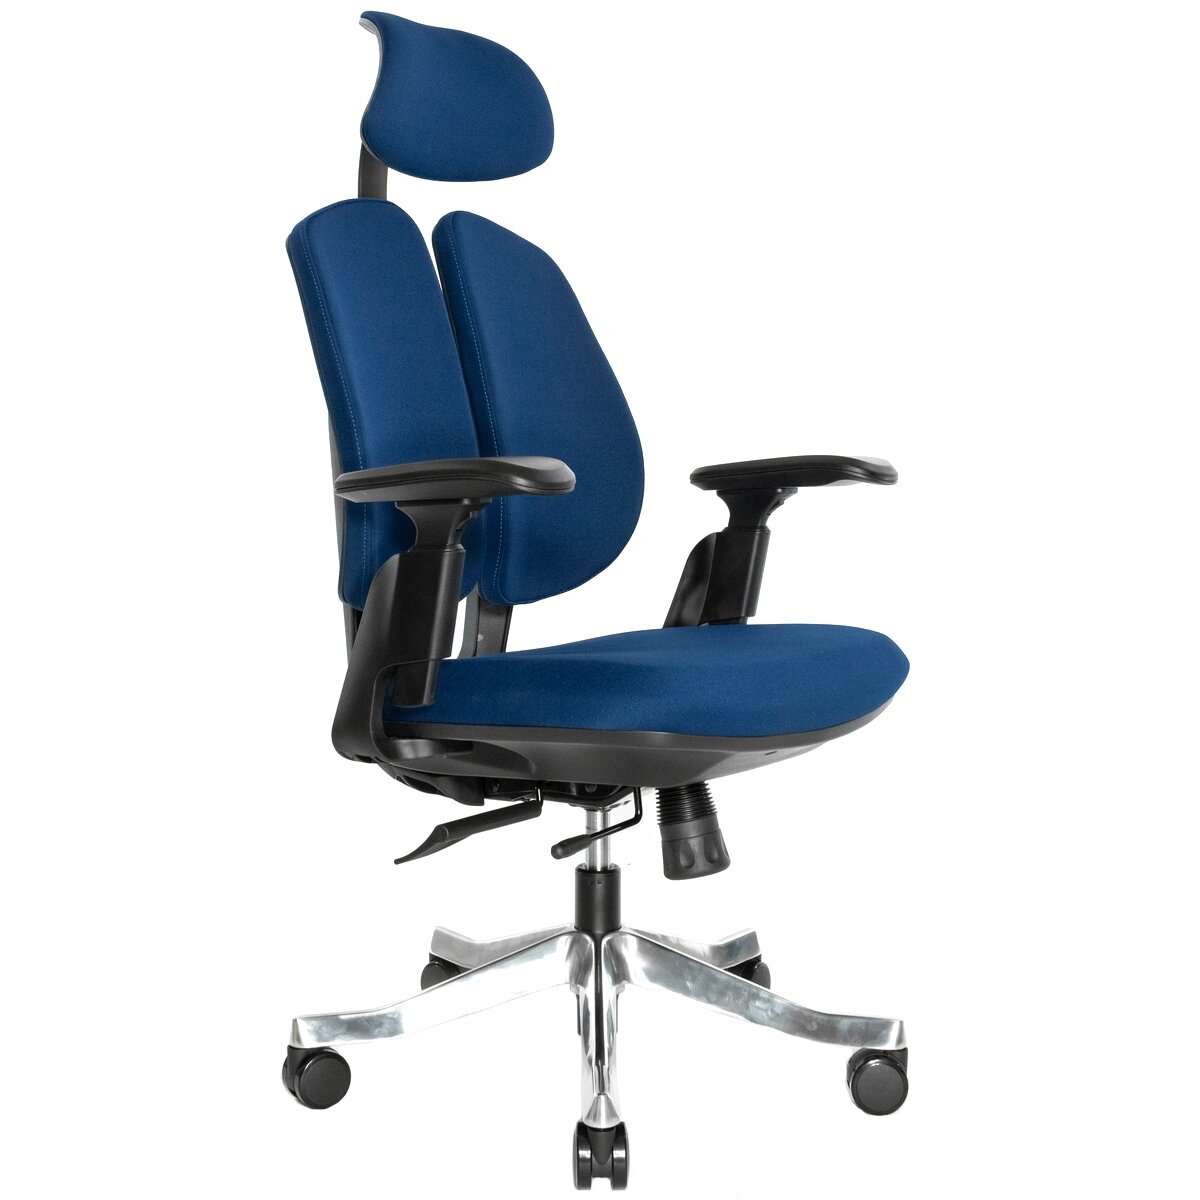 Ортопедическое офисное кресло Falto Orto Bionic А-92-2 Fabric (синее, каркас черный)